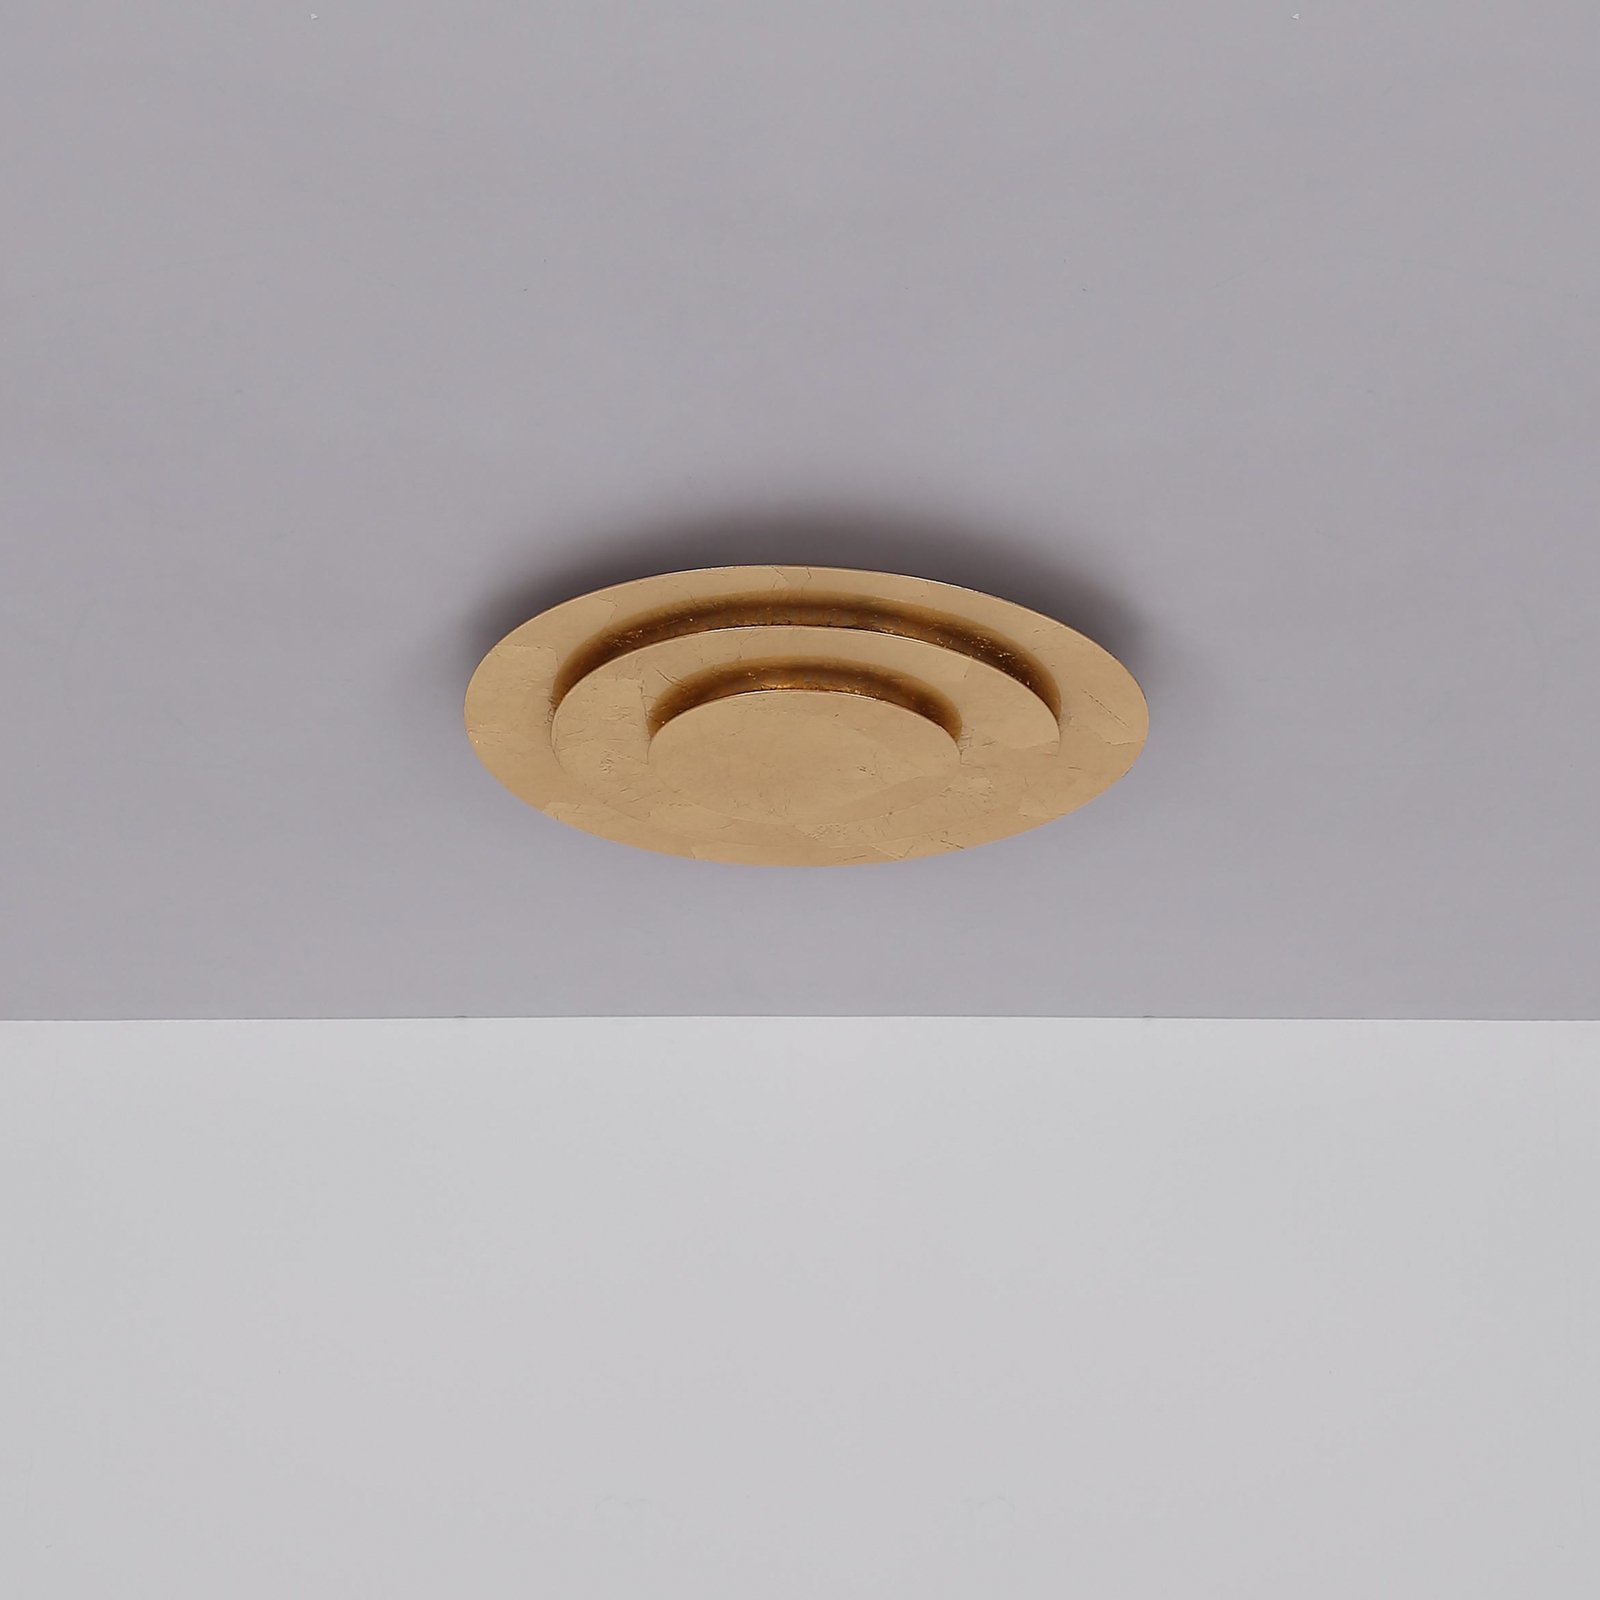 Heda plafondlamp, Ø 35 cm, goudkleurig, metaal